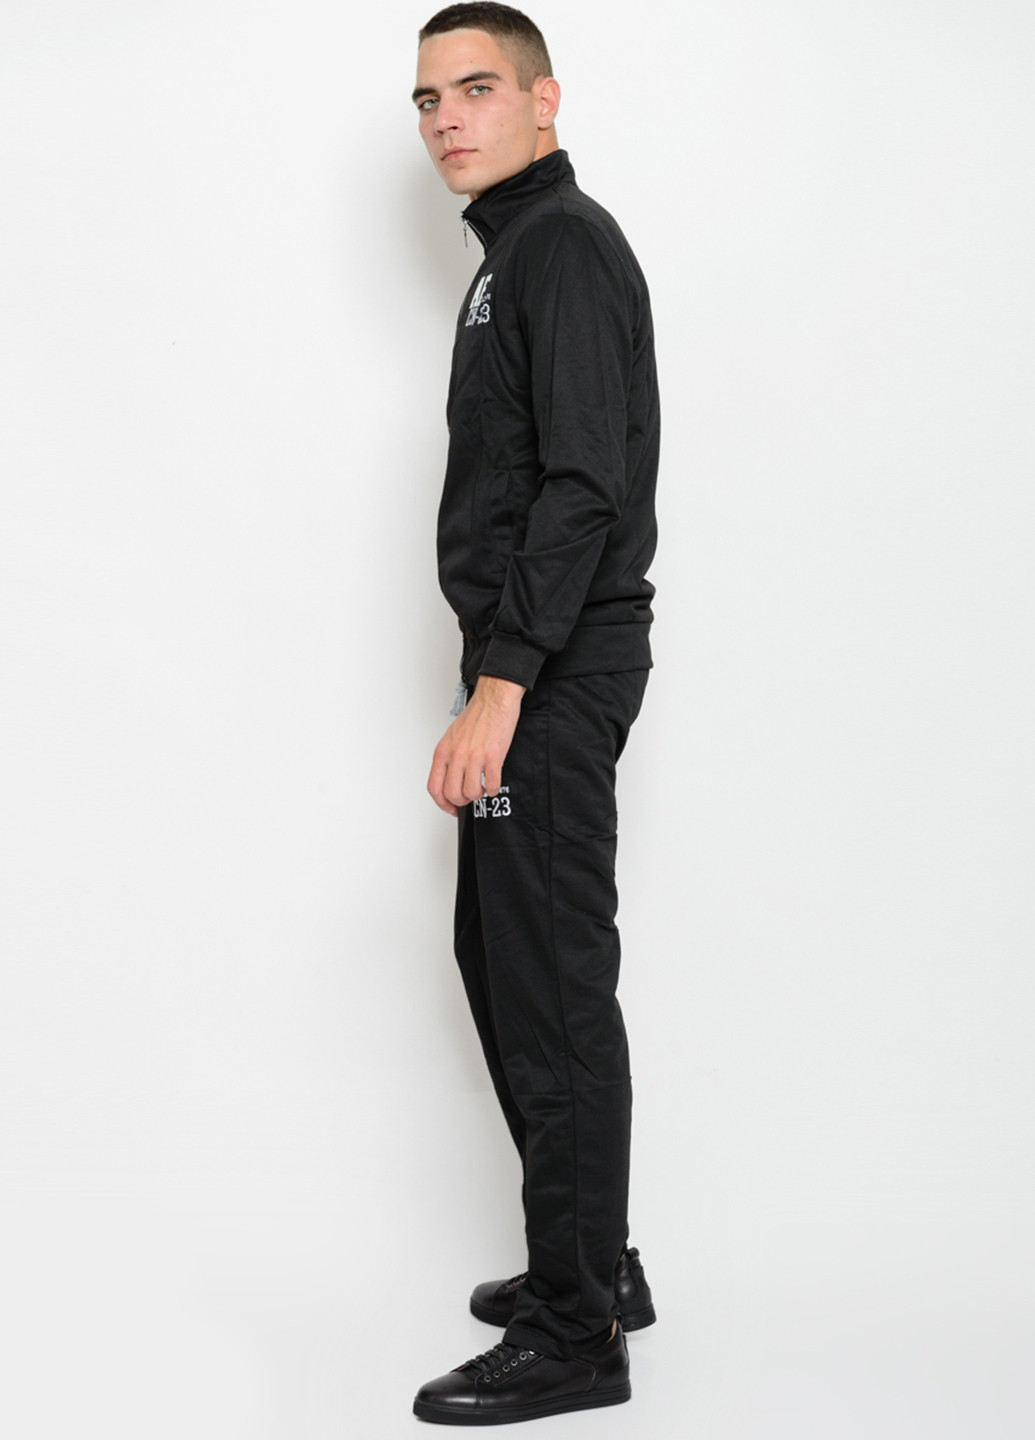 Черный демисезонный костюм (кофта, брюки) с длинным рукавом, брючный ISSA PLUS